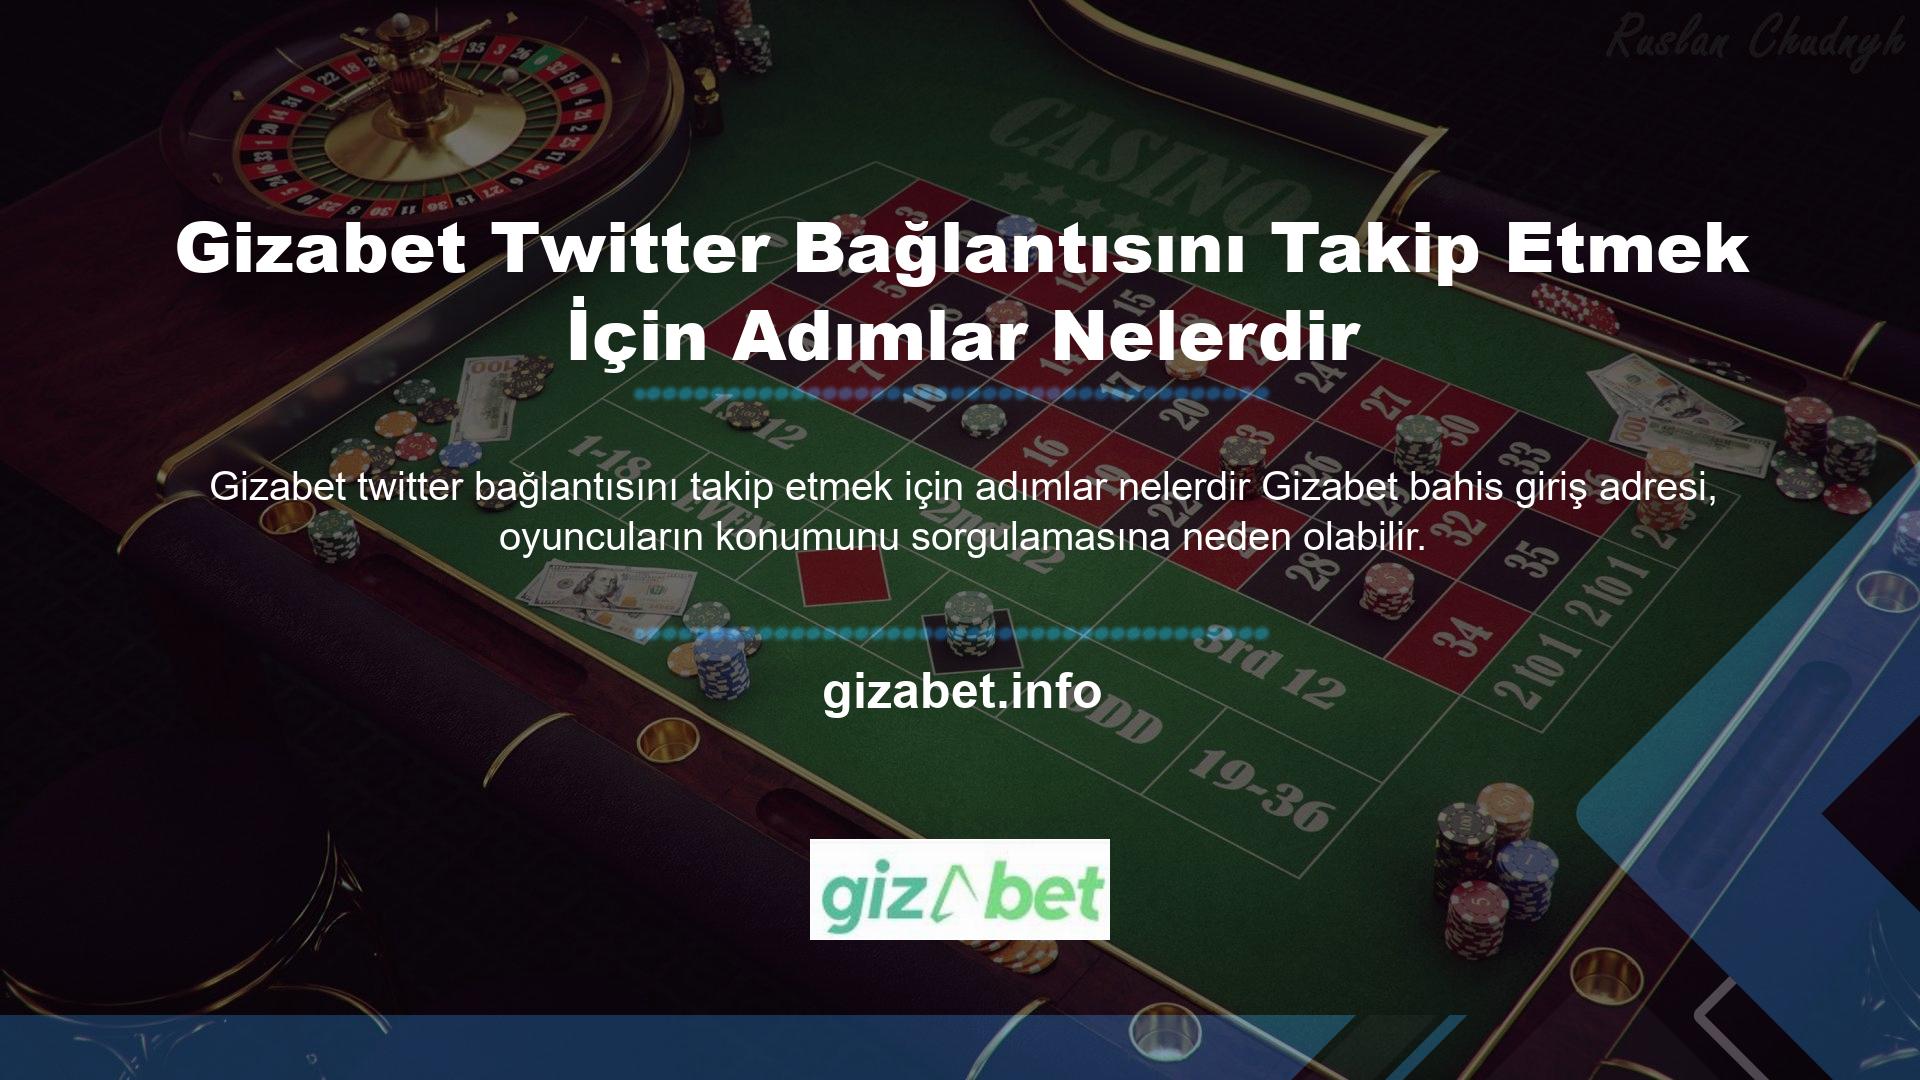 Türkiye'de yasadışı casino sitelerine erişimin yasaklanması nedeniyle BTK tarafından kapatıldı